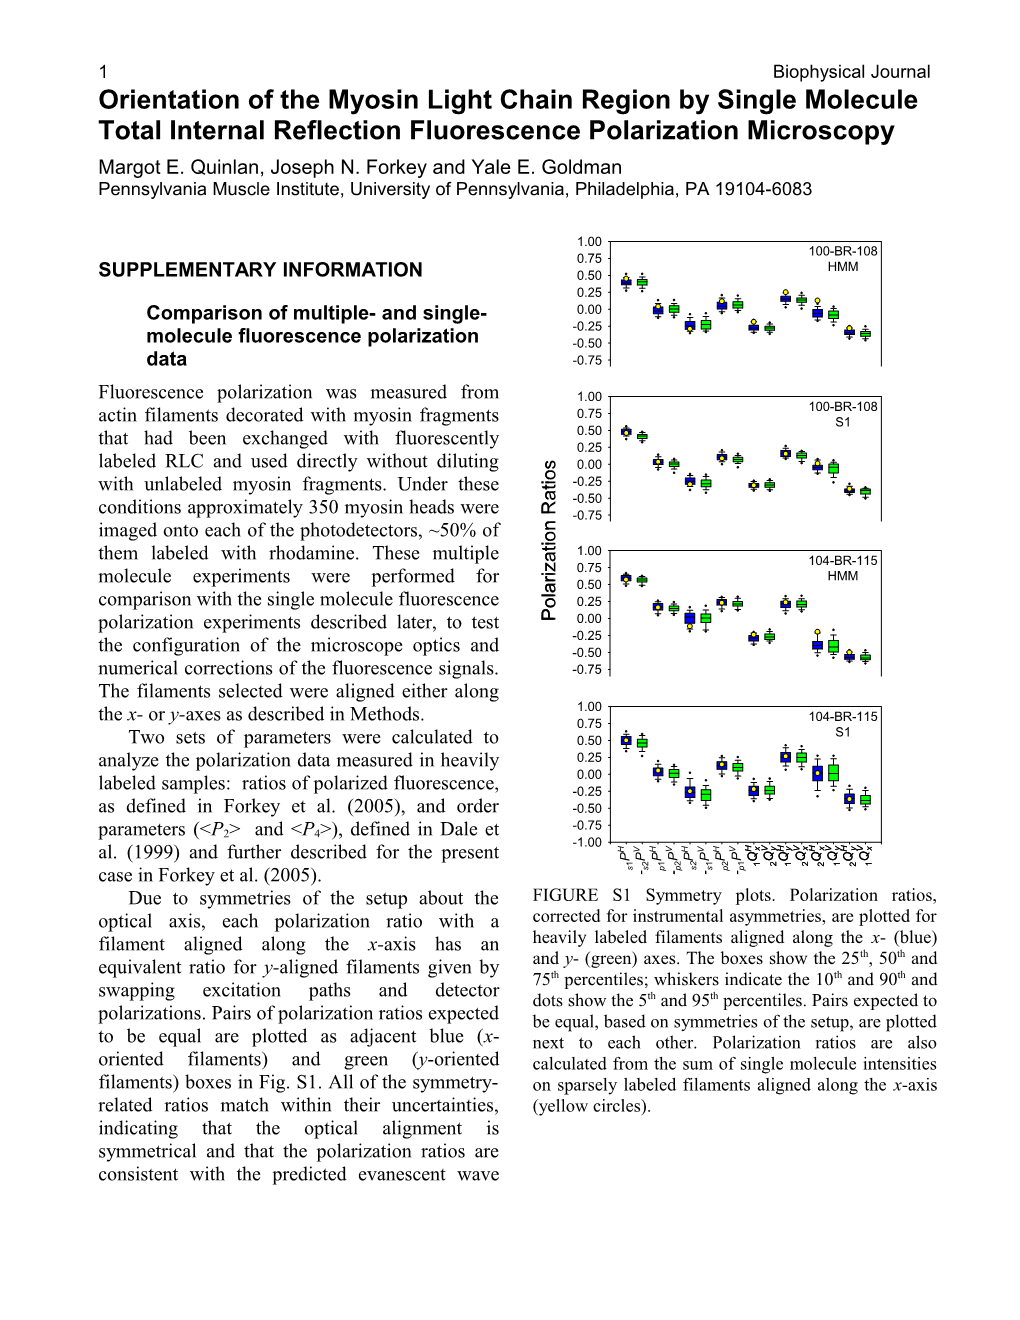 Comparison of Multiple- and Single- Molecule Fluorescence Polarization Data